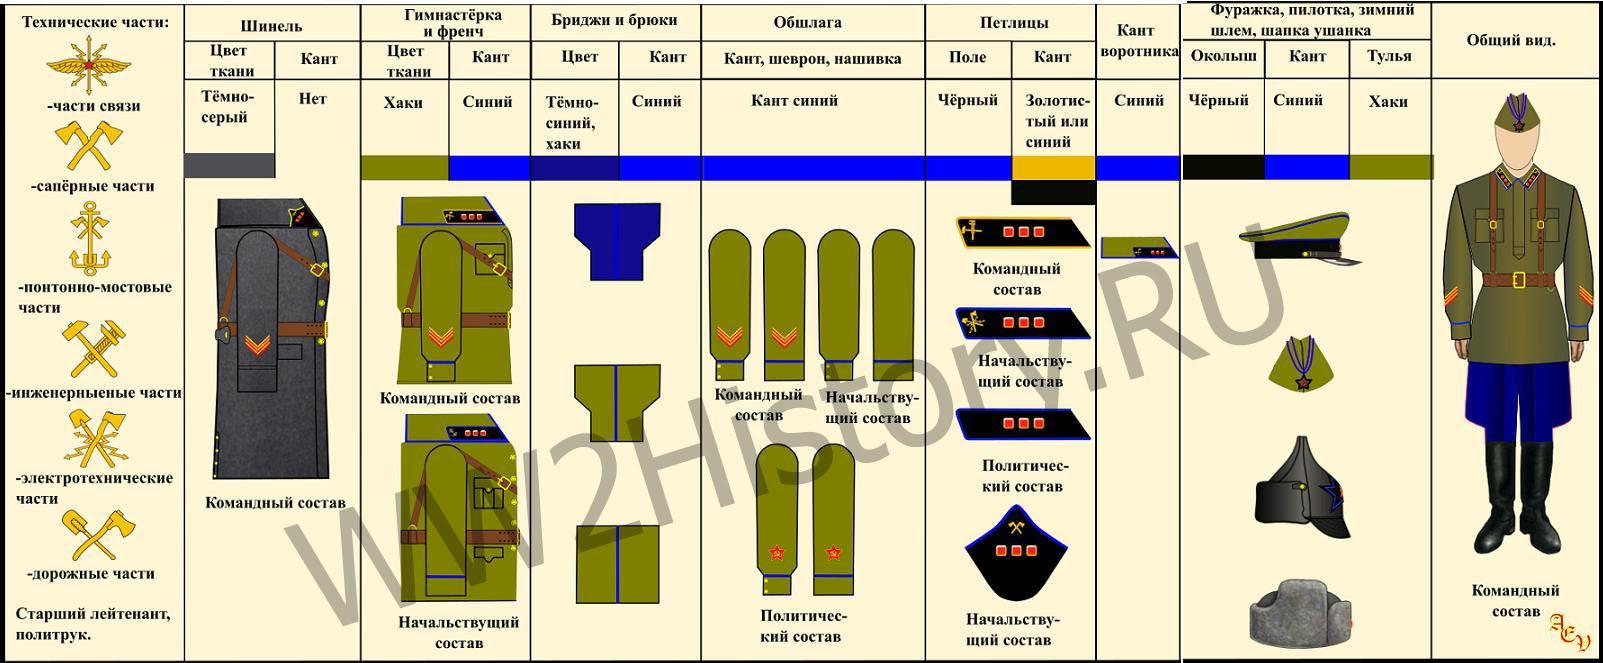 Таблица формы одежды командного, начальствующего и политического состава РККА на 22.6.1941 года Ccfd2395